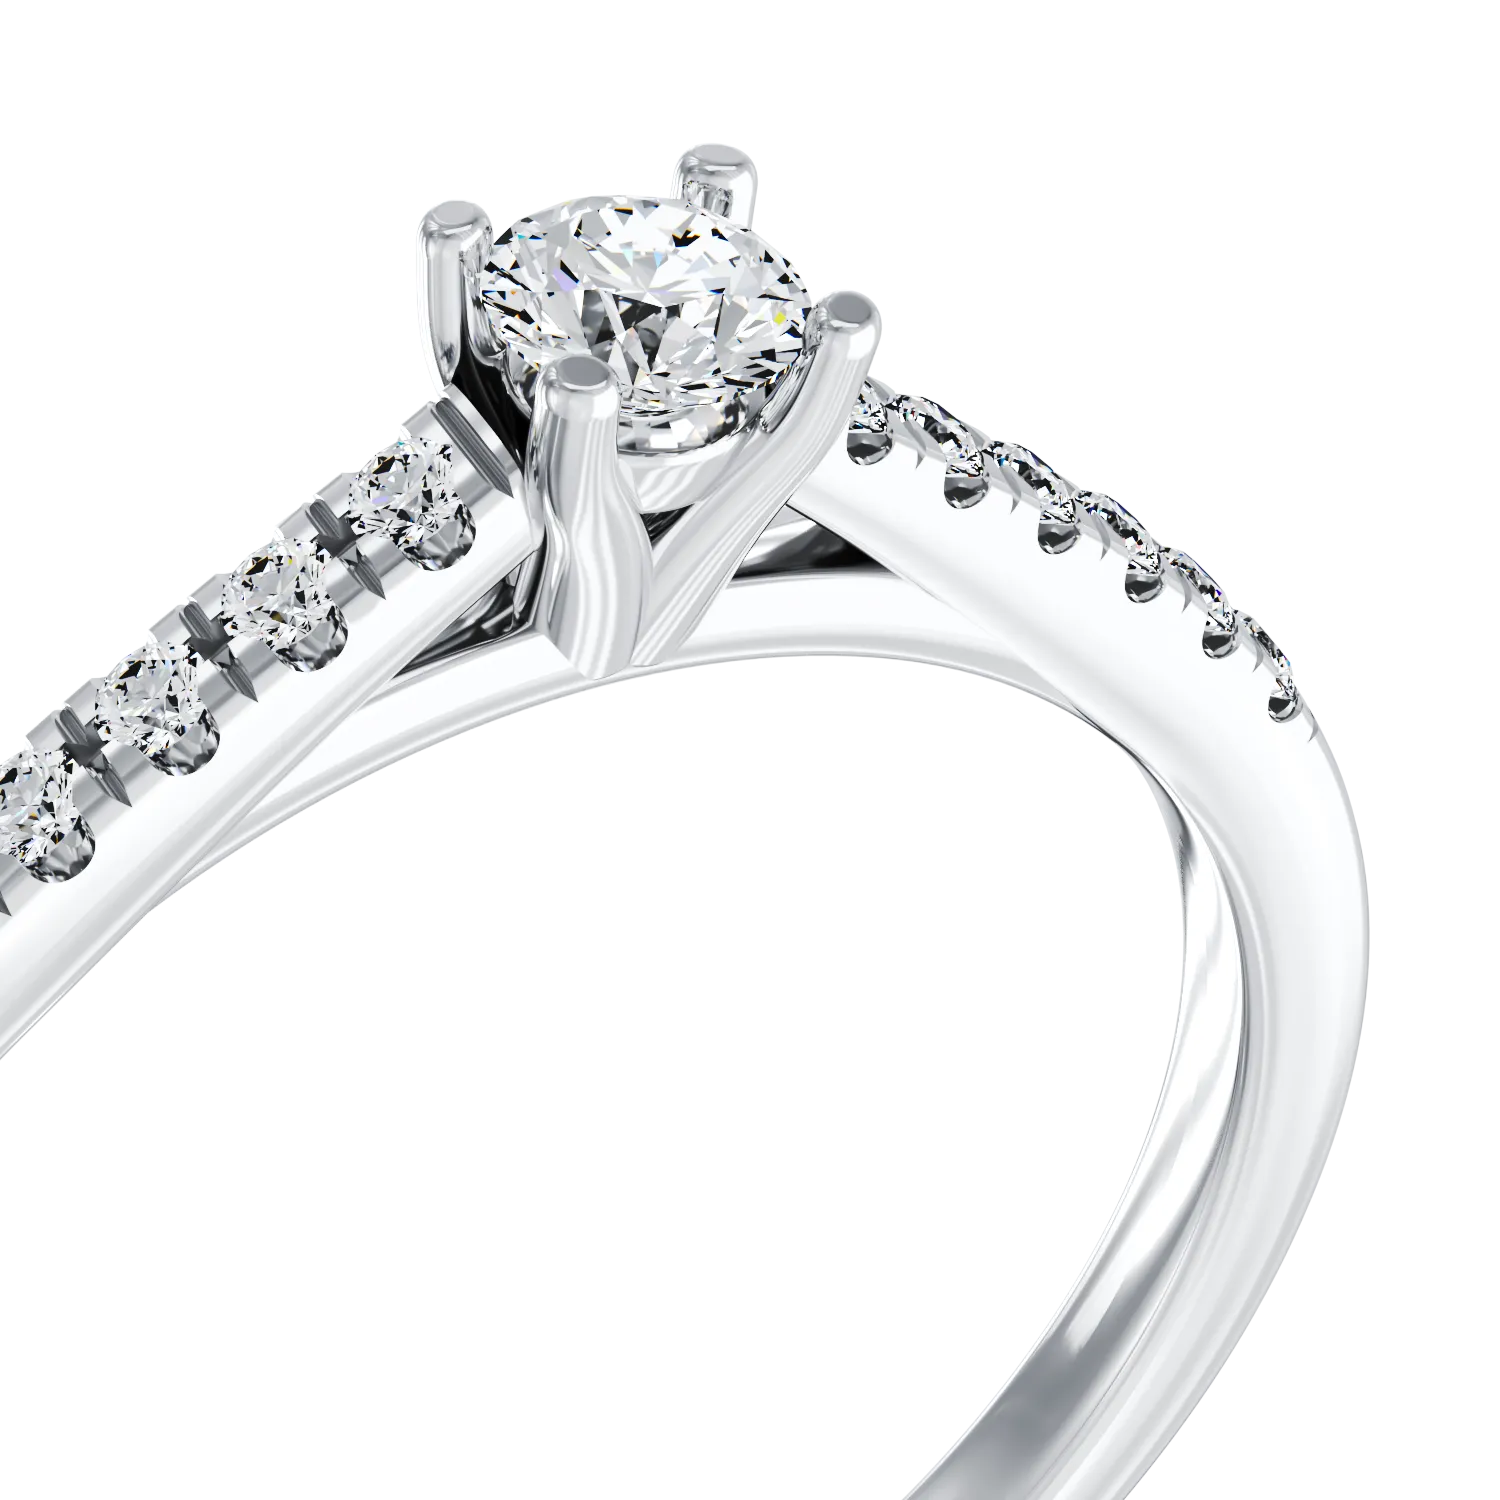 Eljegyzési gyűrű 18K-os fehér aranyból 0,25ct gyémánttal és 0,012ct gyémánttal. Gramm: 2,9